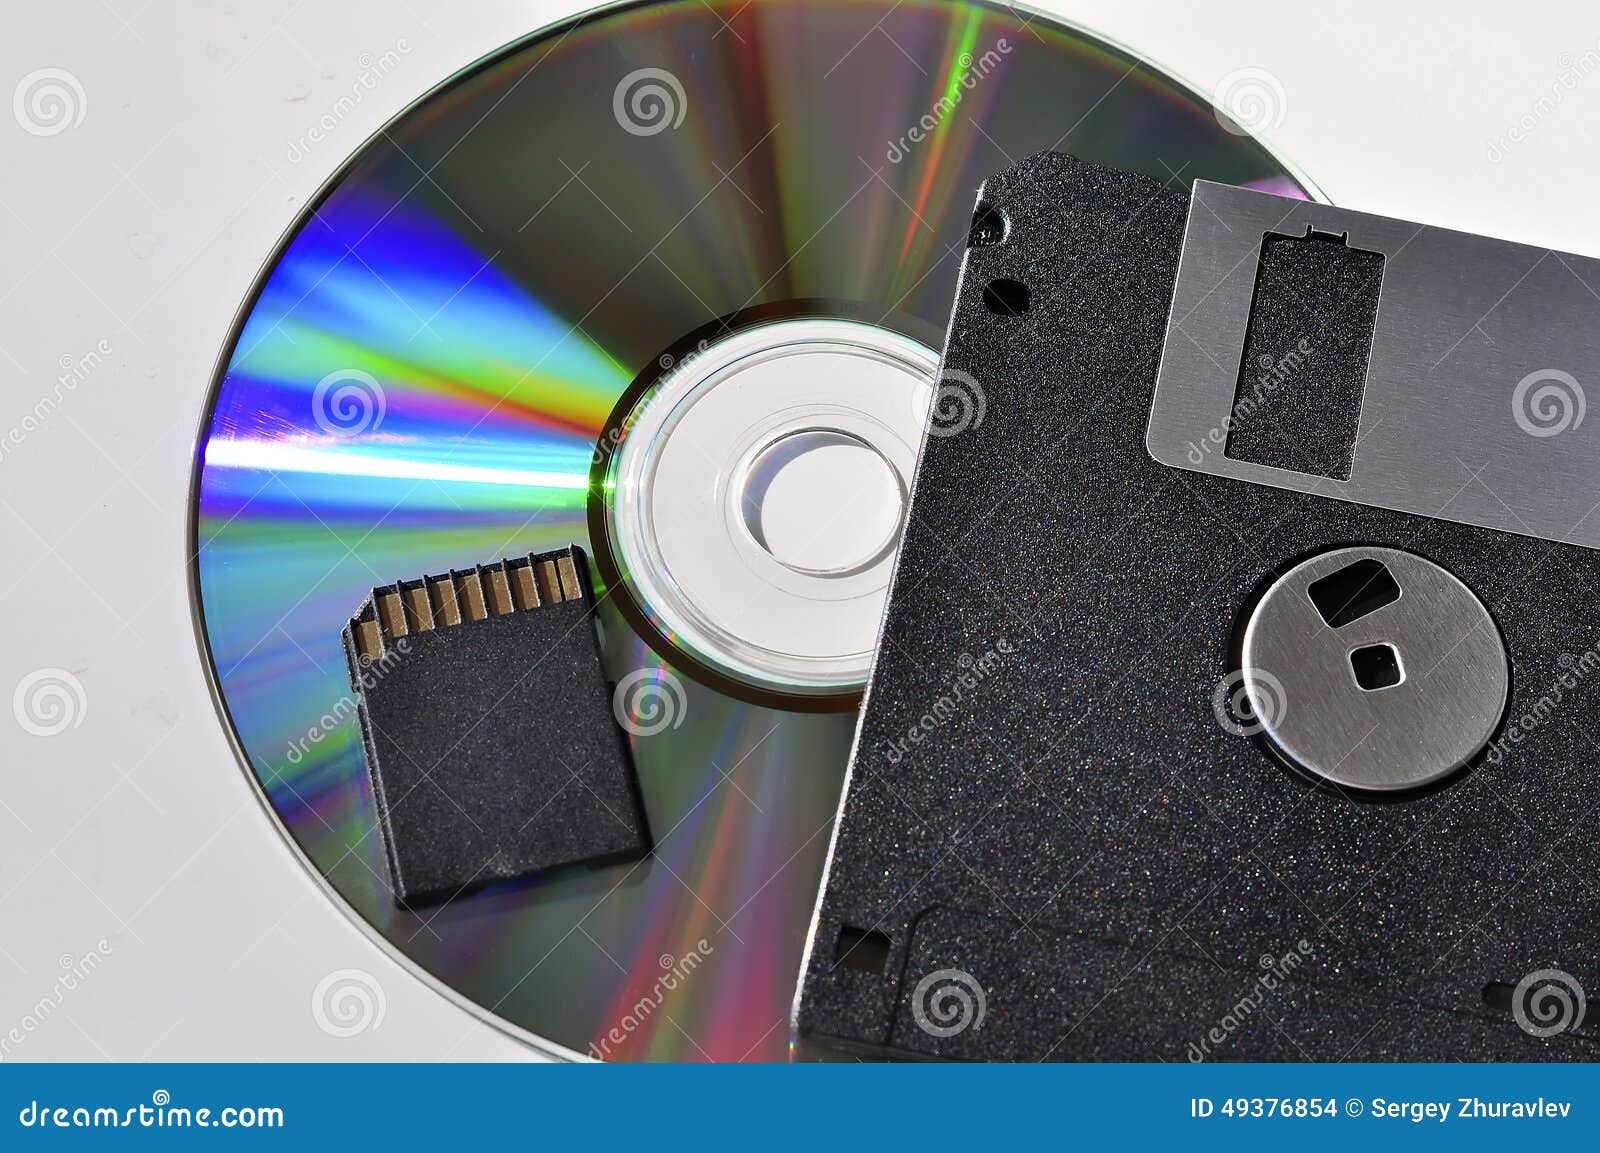 Жесткий диск flash память компакт диск процессор. Магнито-оптические диски. Флешка диск. Магнитные и оптические носители. Дискета диск флешка.